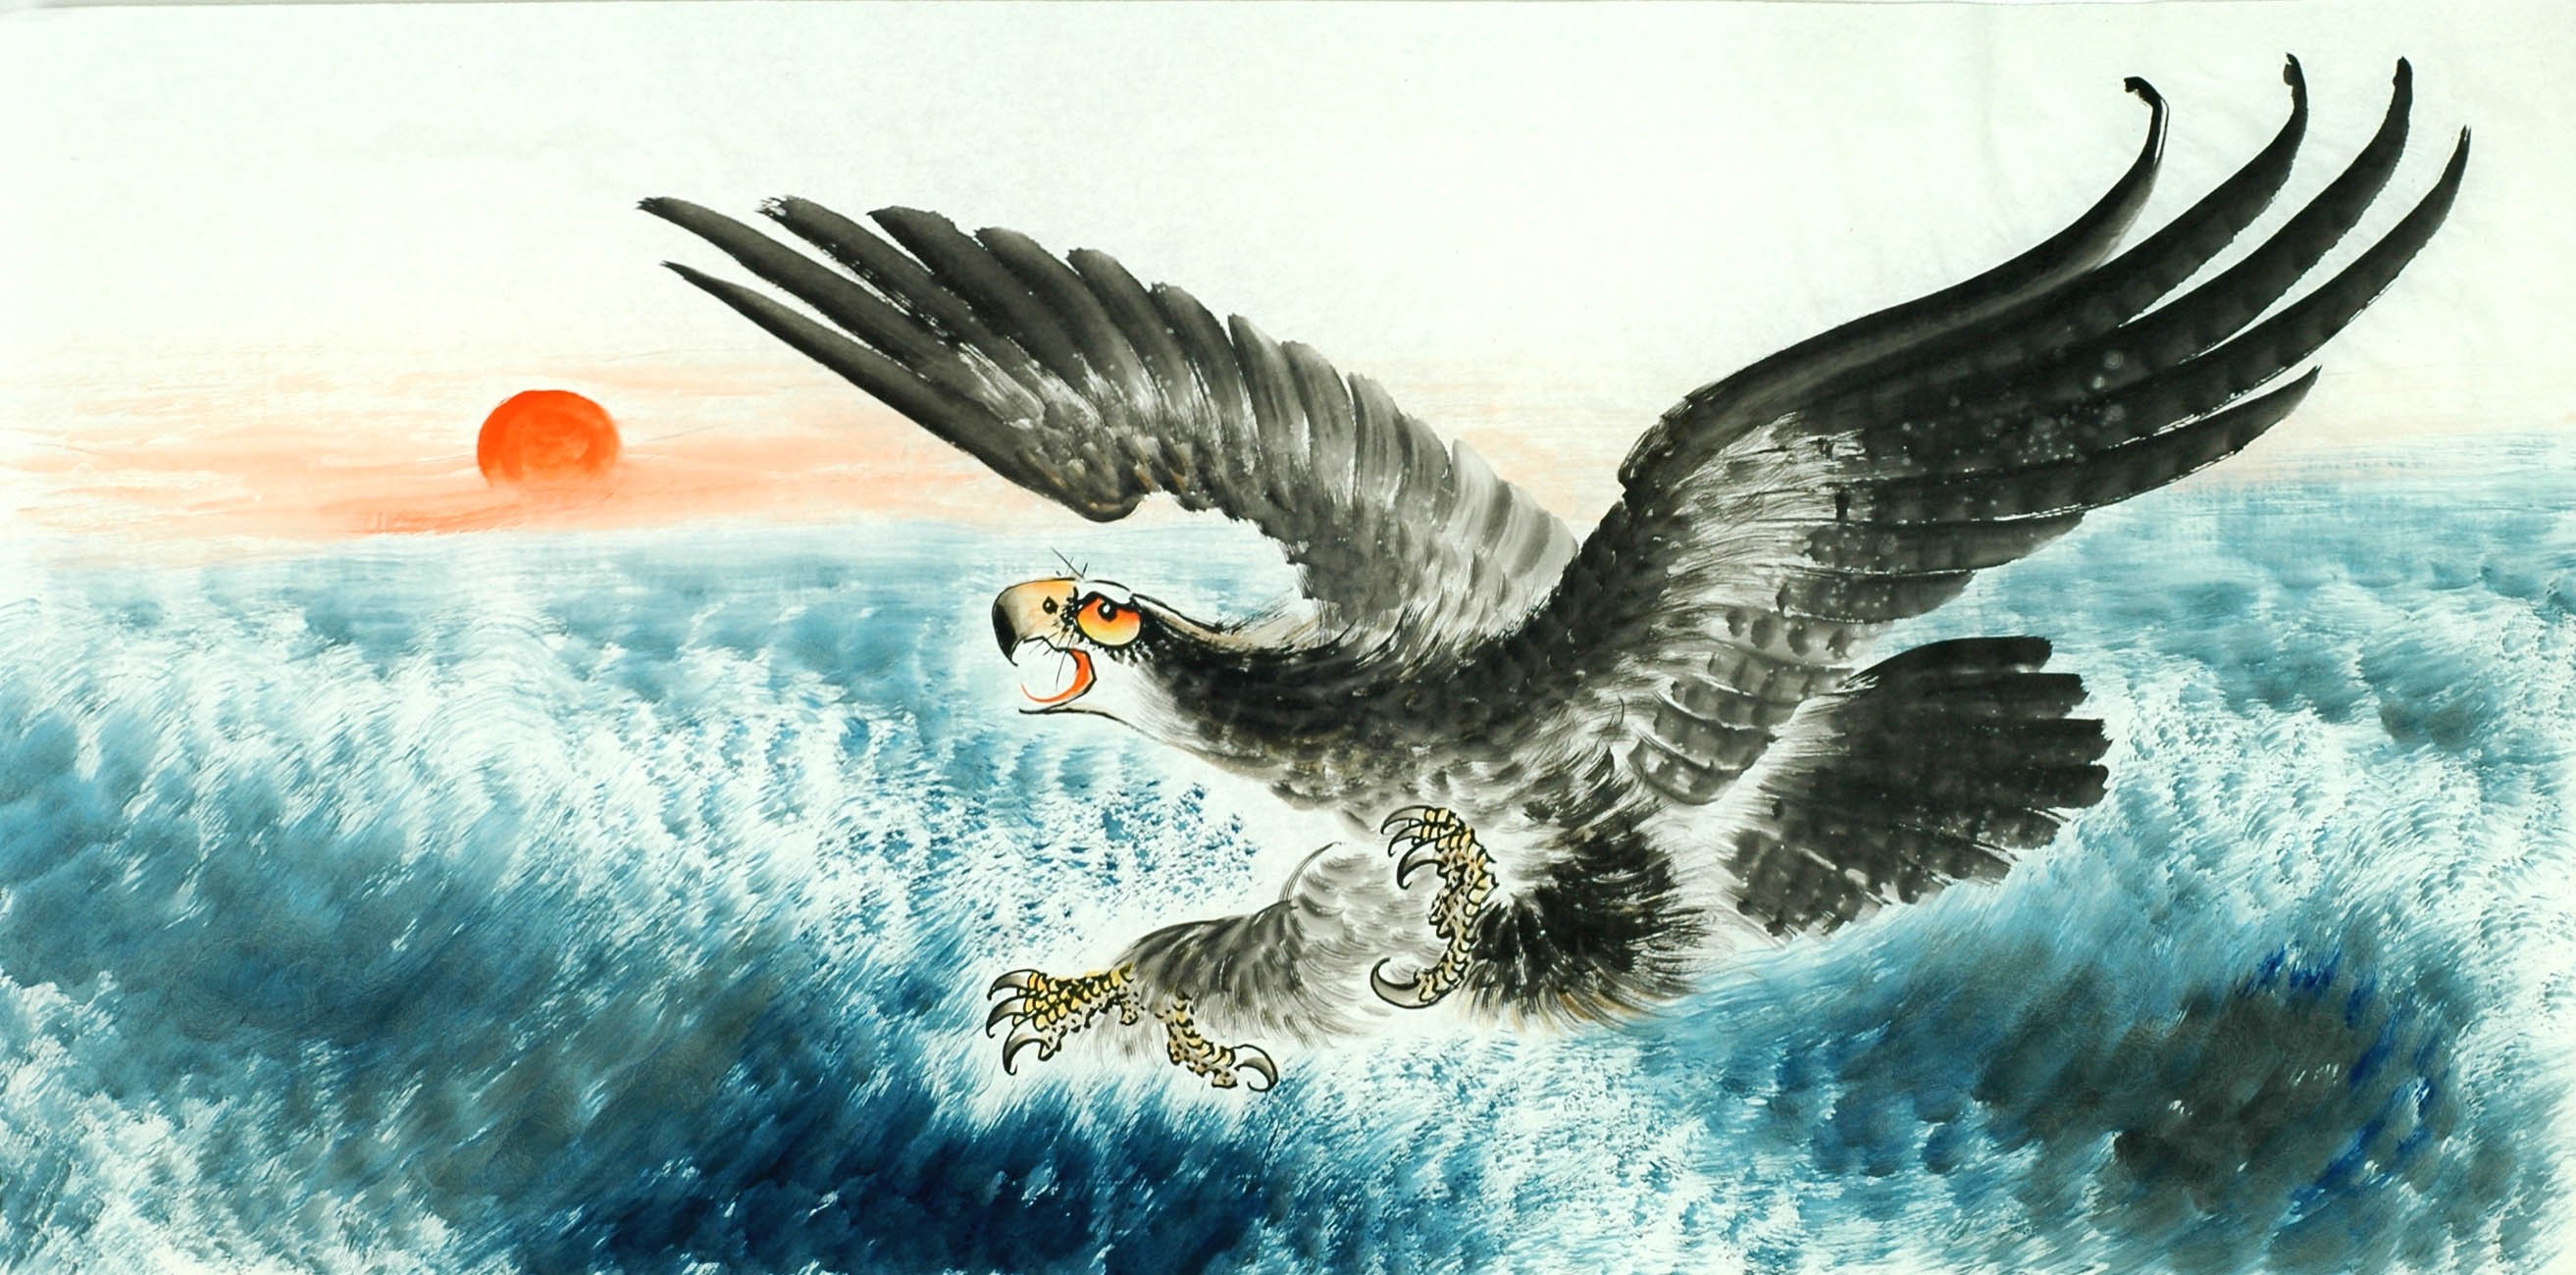 Chinese Eagle Painting - CNAG011347